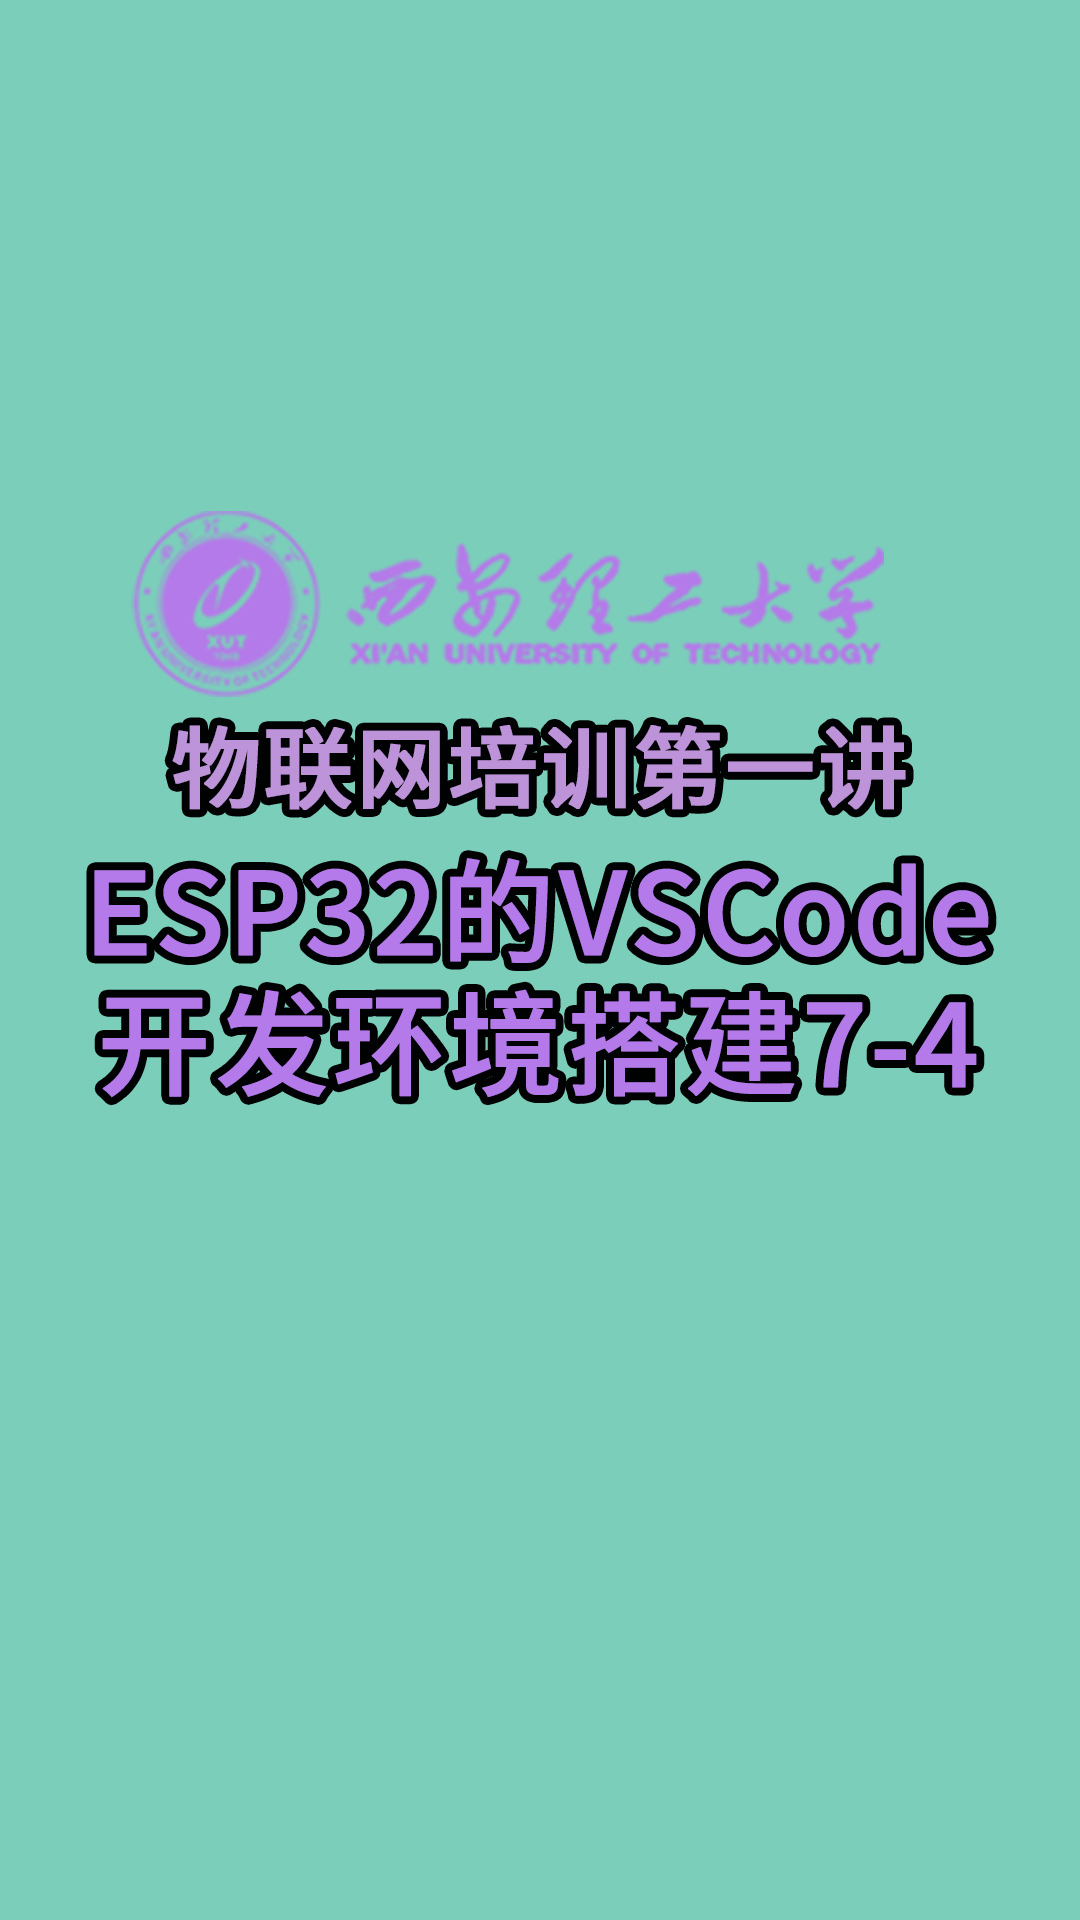 西安理工大學-物聯網培訓第一講-ESP32的VSCode開發環境搭建7-4#物聯網 